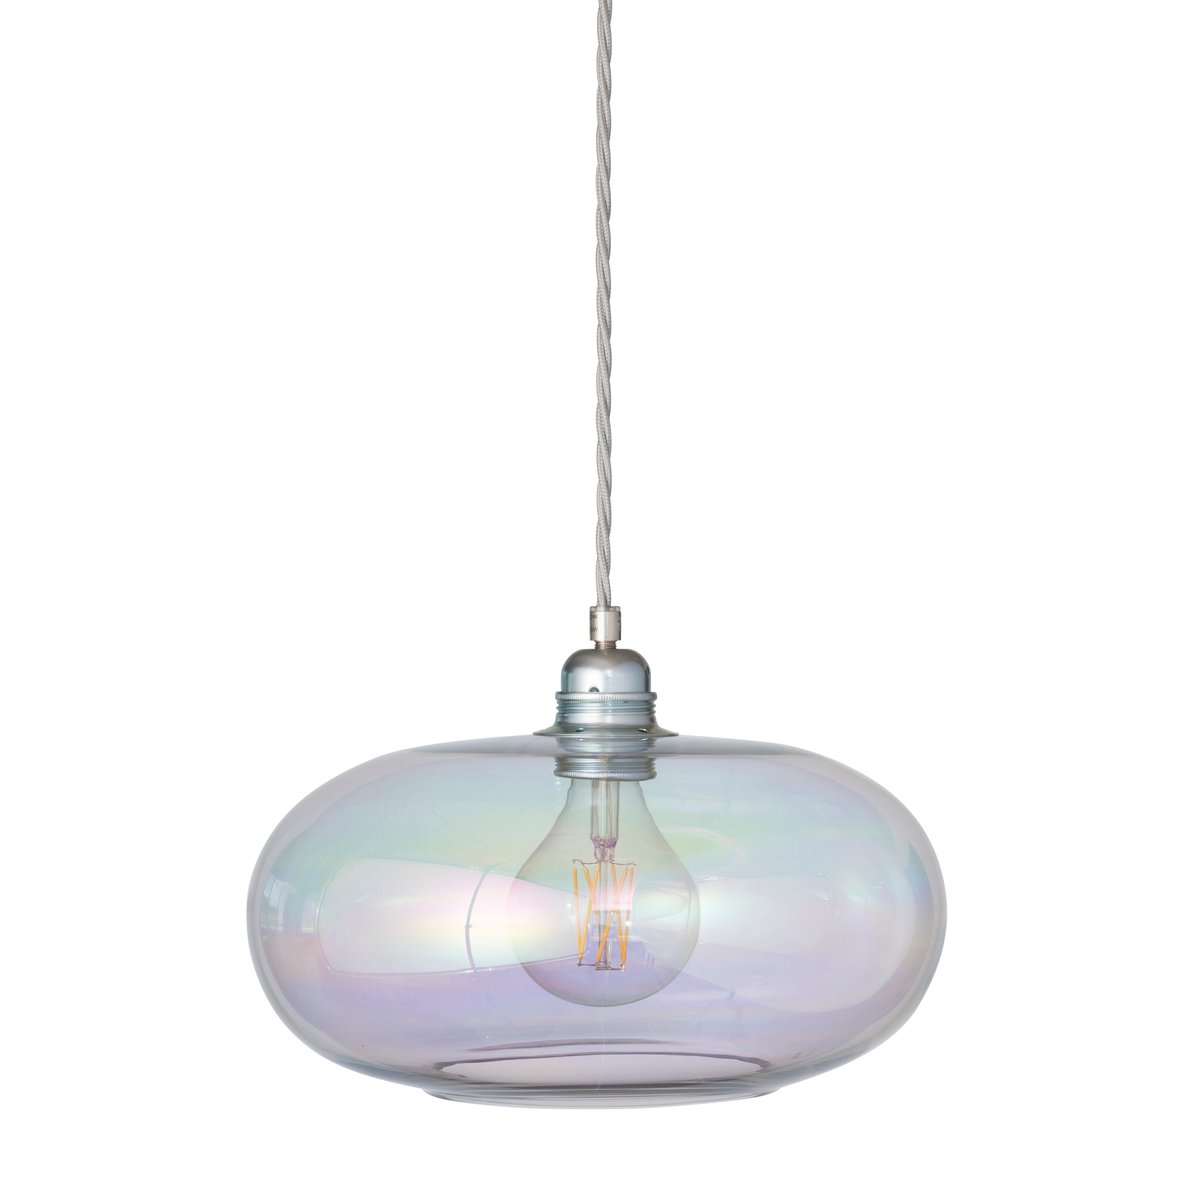 EBB & FLOW Horizon hanglamp Ø 29 cm. Chameleon-silver